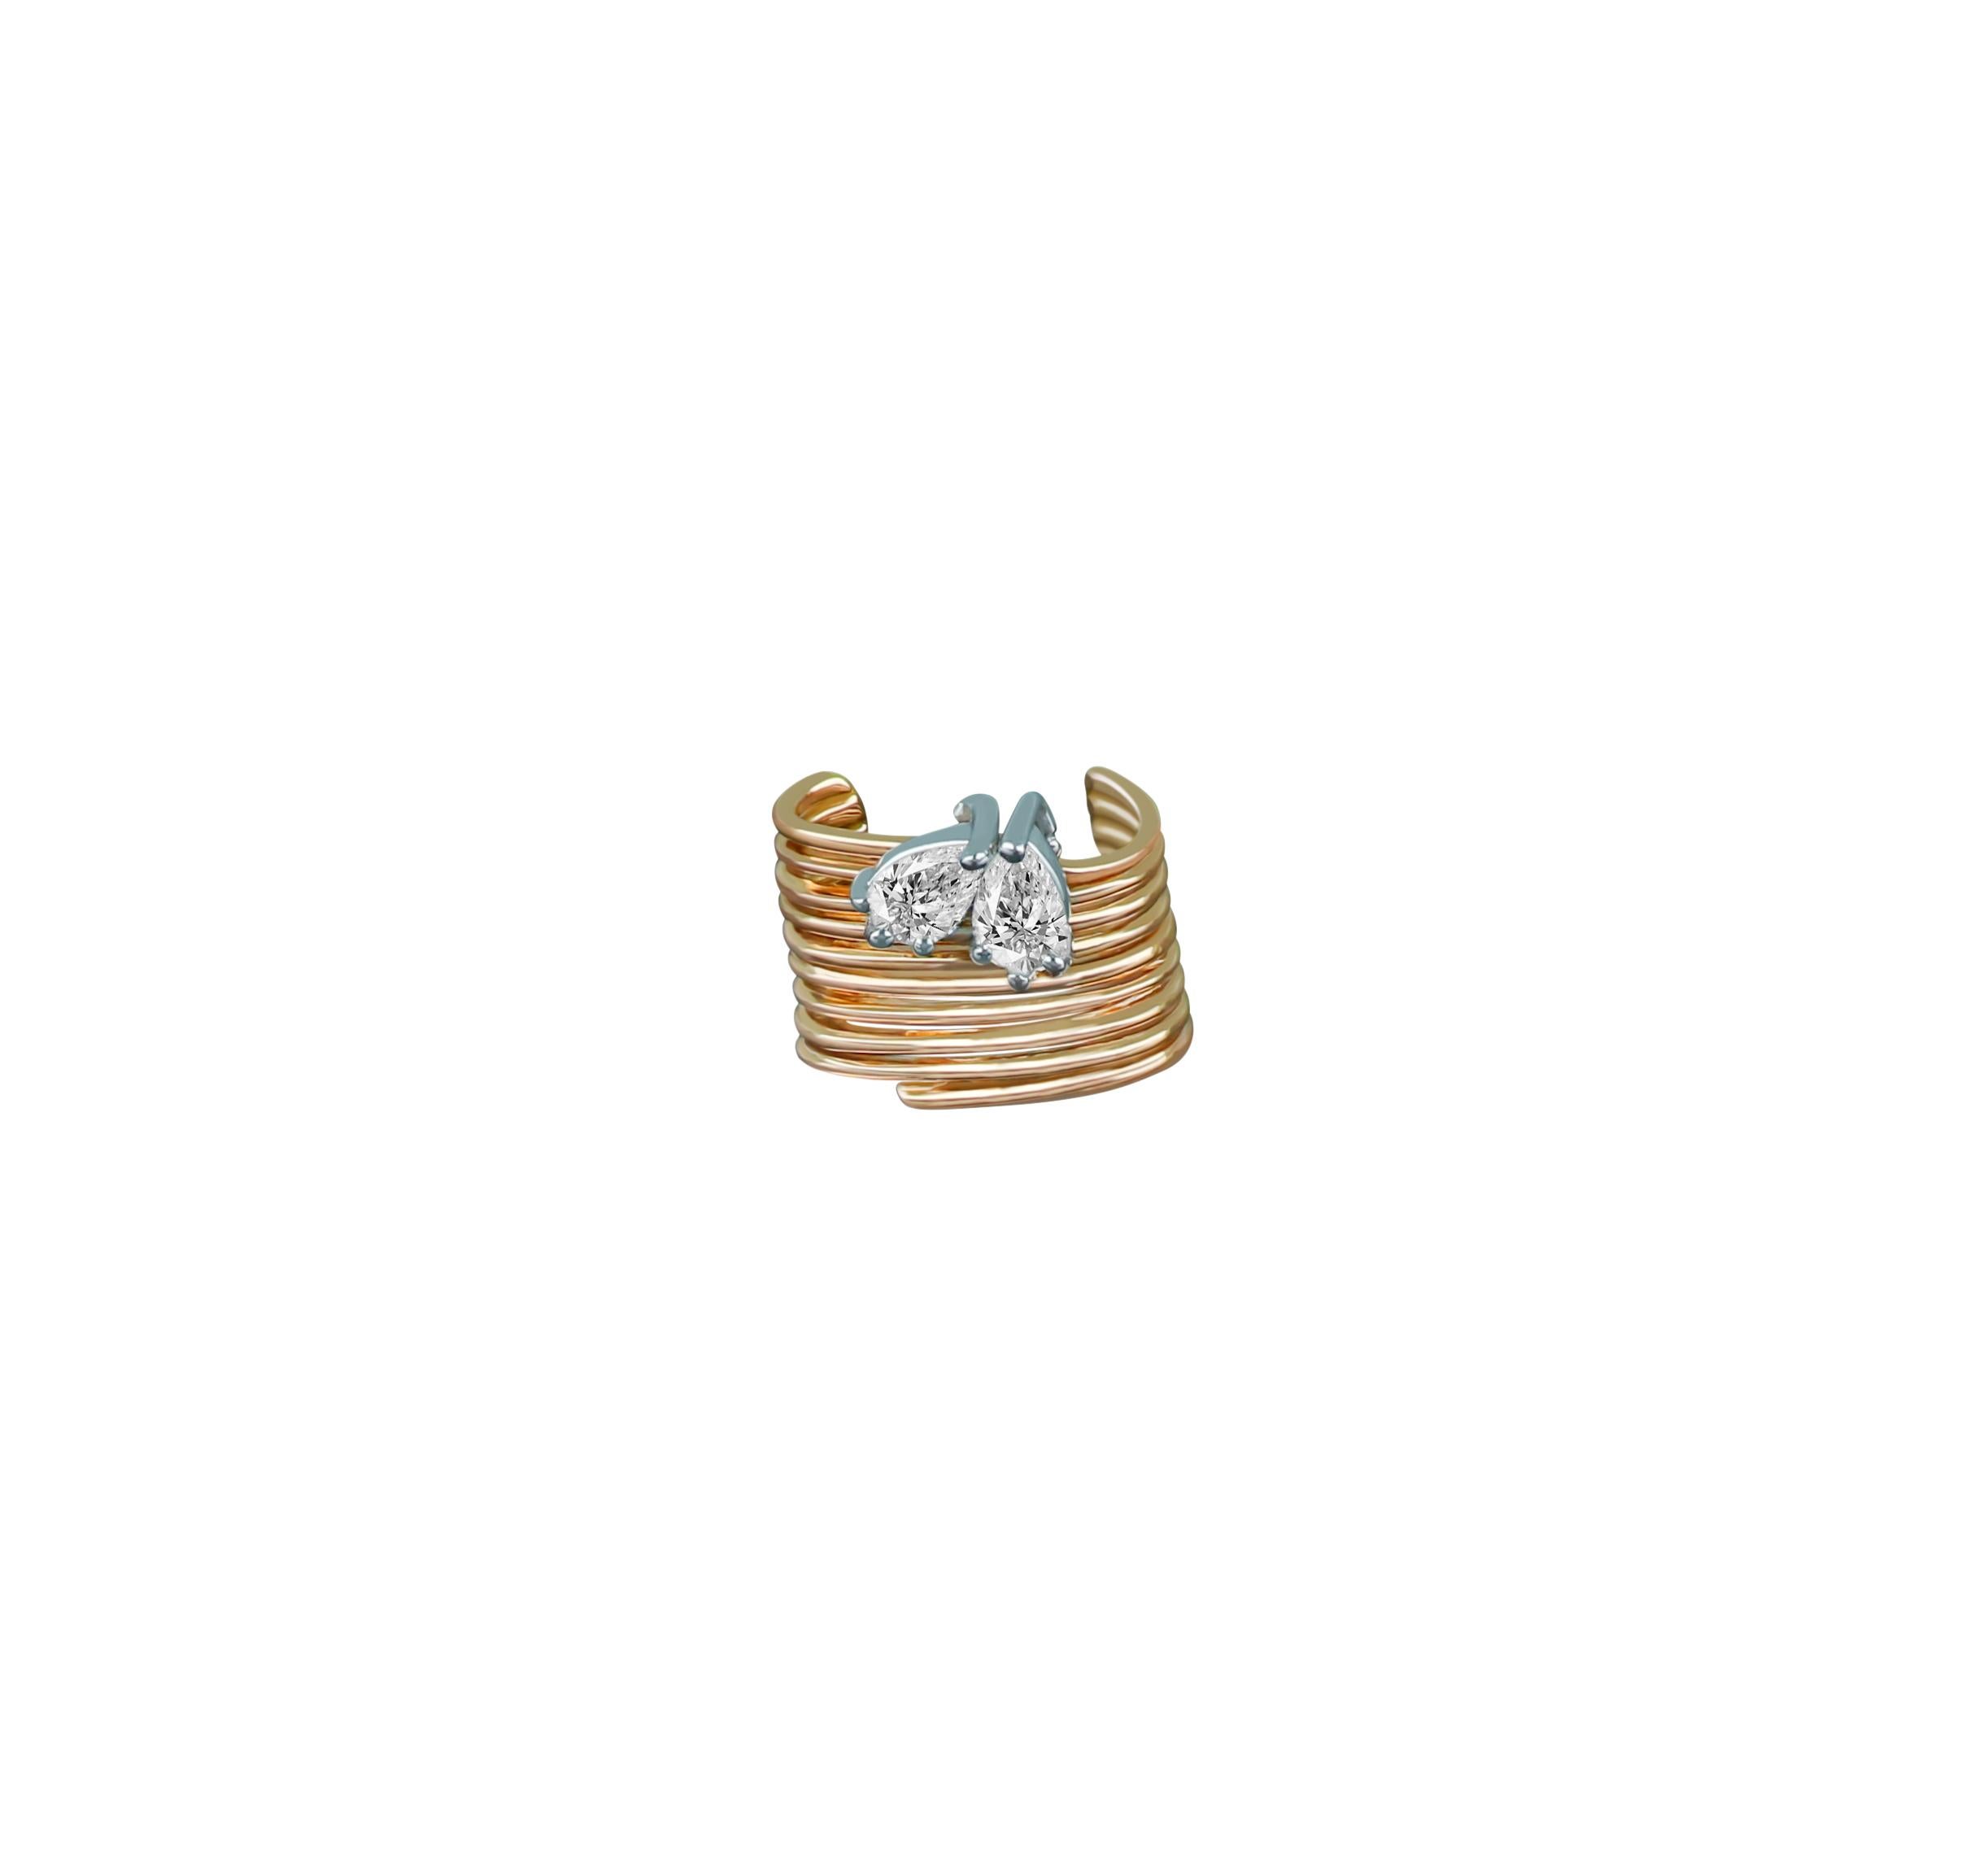 Le motif en forme de cœur de cette boucle d'oreille en or 18 carats est d'un romantisme intemporel. Présentée avec des diamants taille poire de 0,285 ct d'une beauté extraordinaire, cette création en or rose est une prise symbolique des manchettes